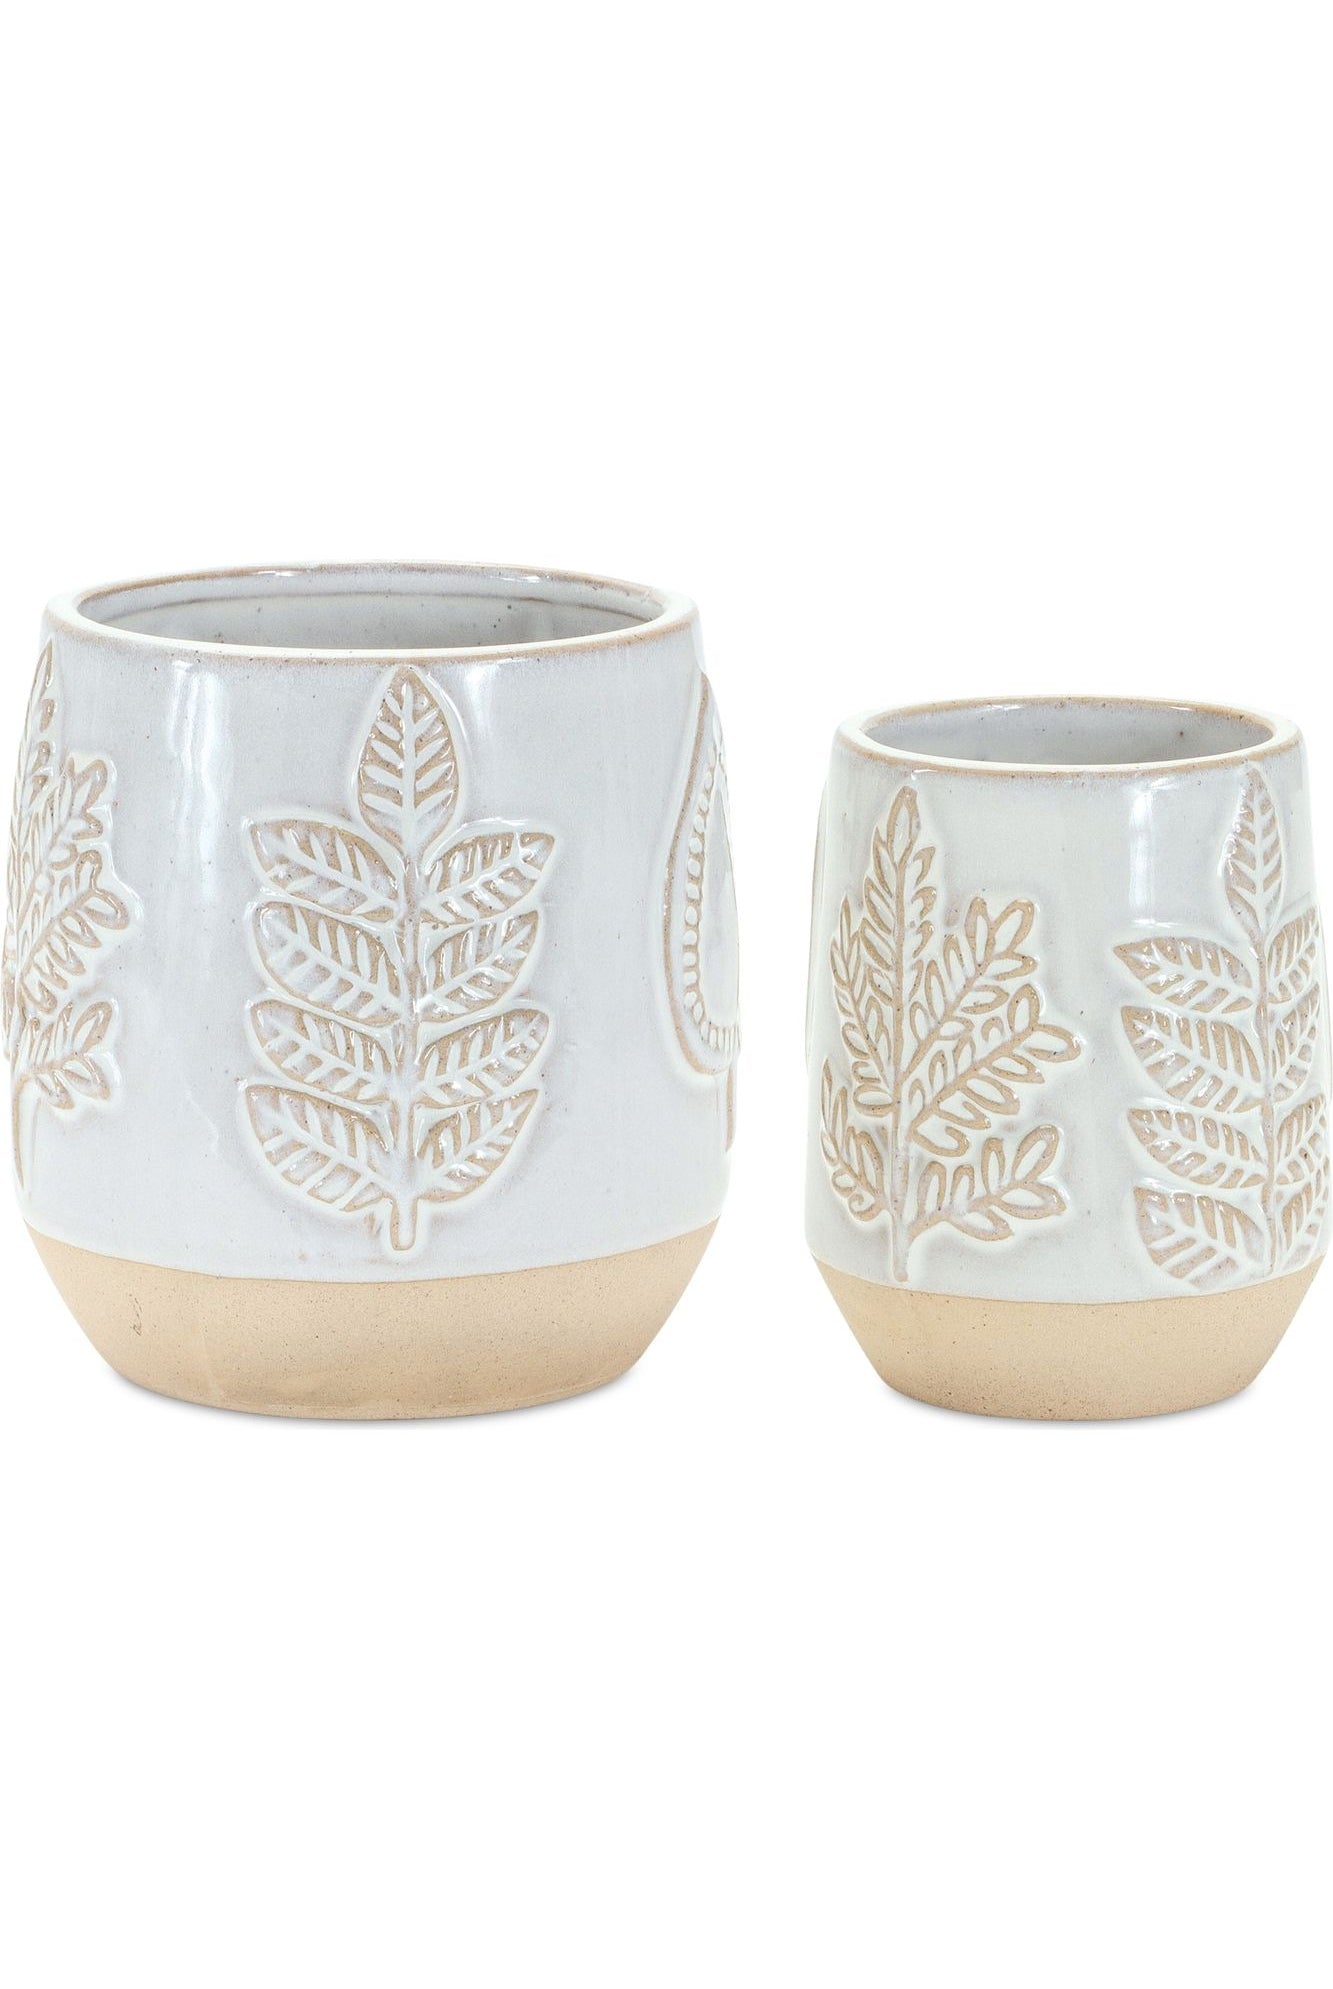 Shop For 5" Beige and Gray Leaf Design Planter Vases (Set of 2) 85469